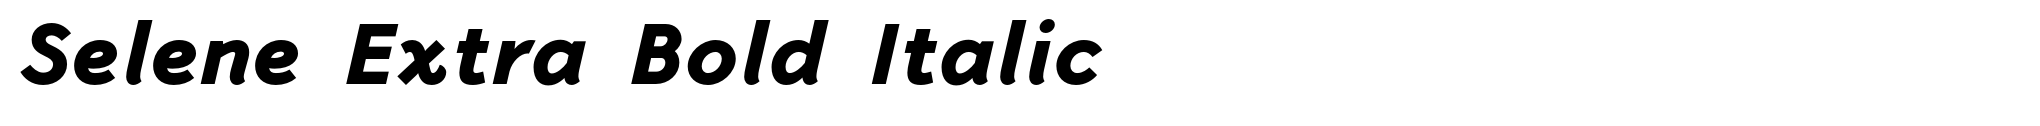 Selene Extra Bold Italic image